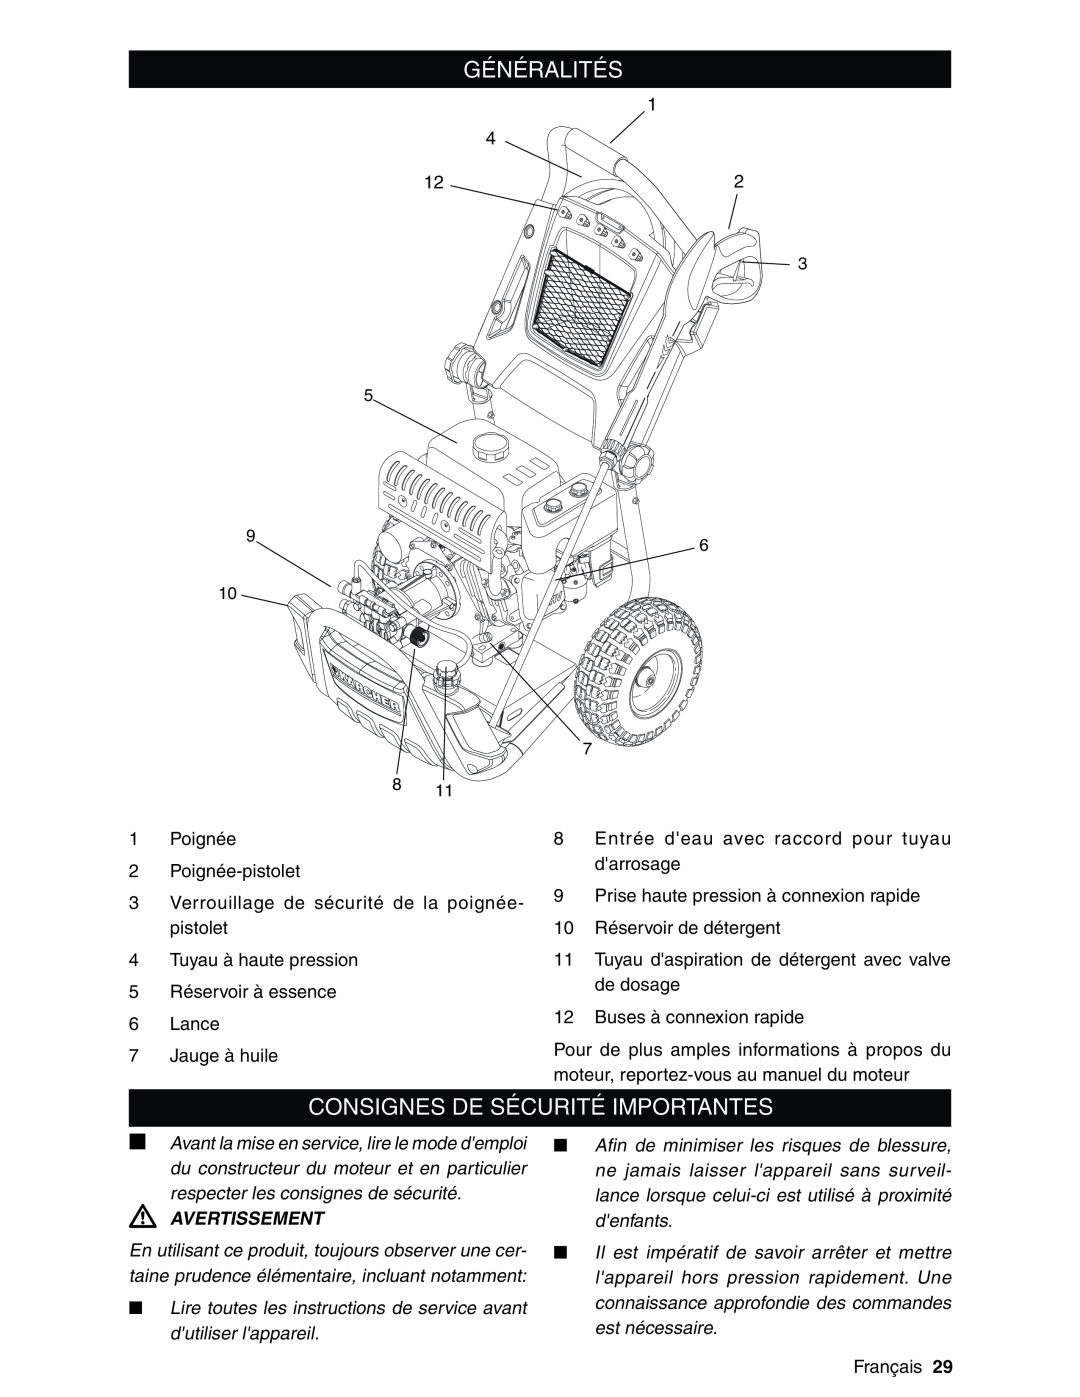 Karcher G2600XC manual Généralités, Consignes De Sécurité Importantes, respecter les consignes de sécurité, Avertissement 